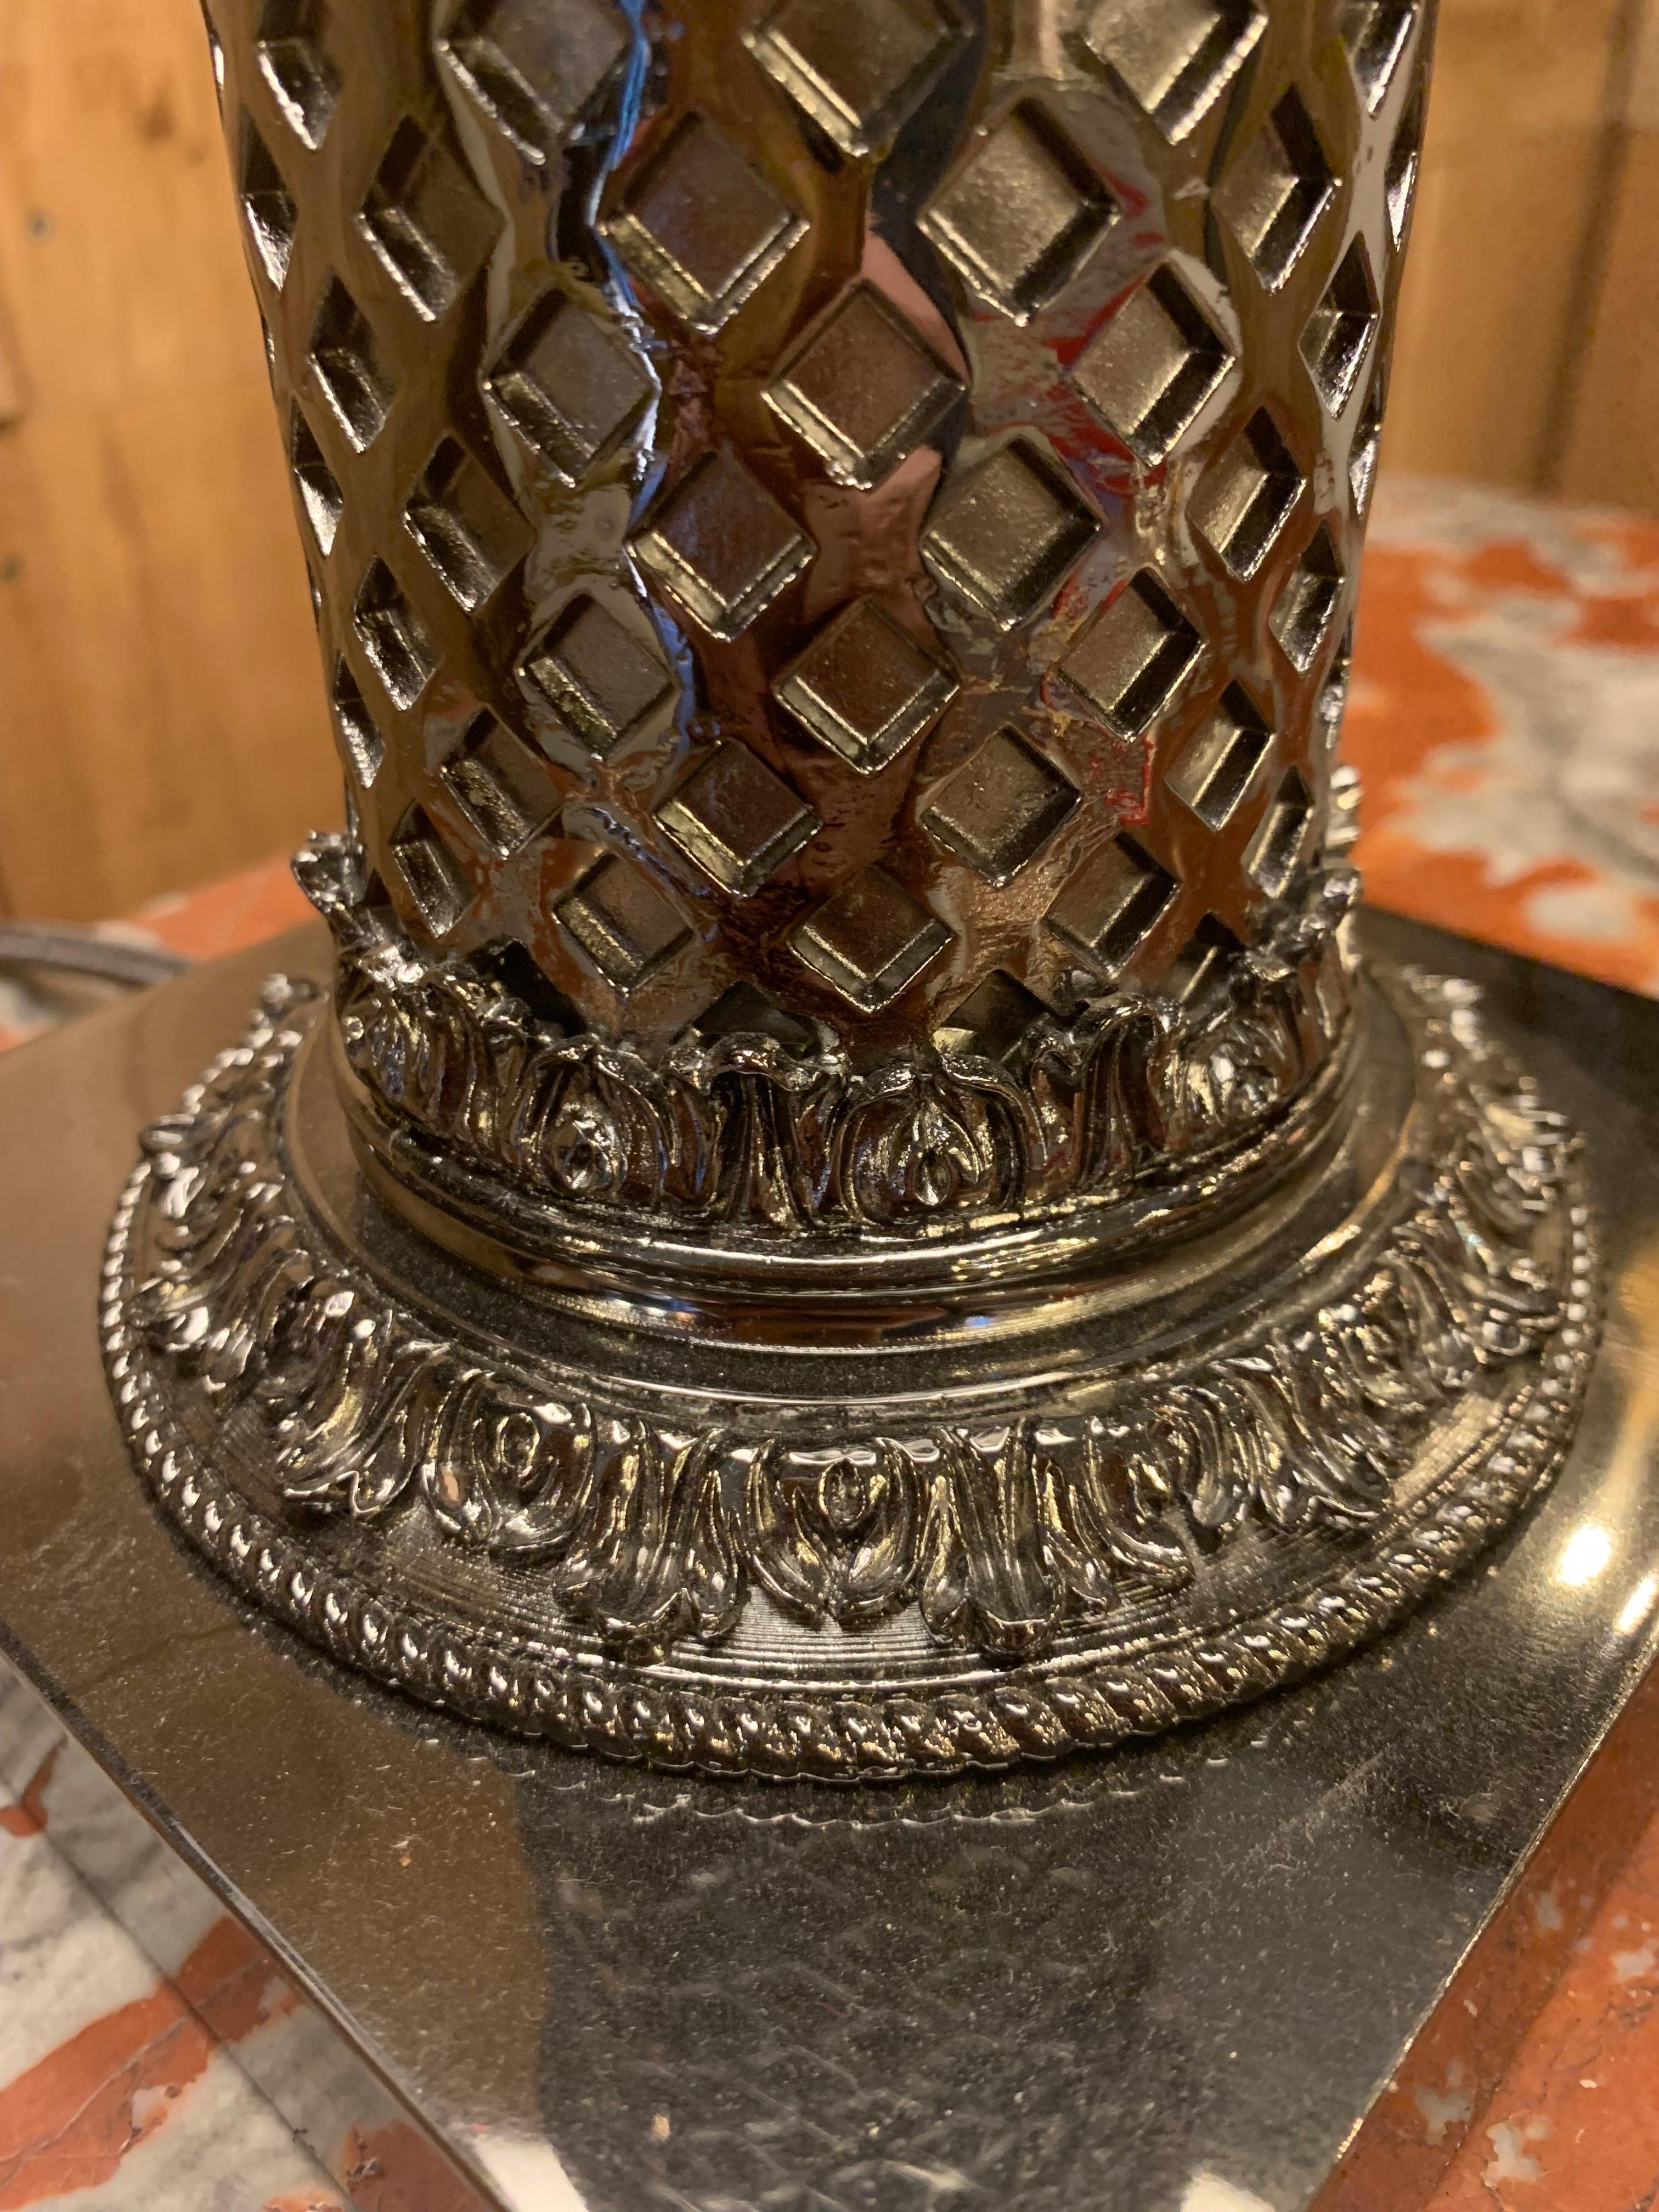 Lampe de table de style napoléon III en bronze nickelé noir avec 3 bras de lumières et son abat-jour...

Nous avons une lampe de table en stock, mais nous pouvons les produire sur mesure et dans d'autres finitions telles que l'or 24k, l'argent, le